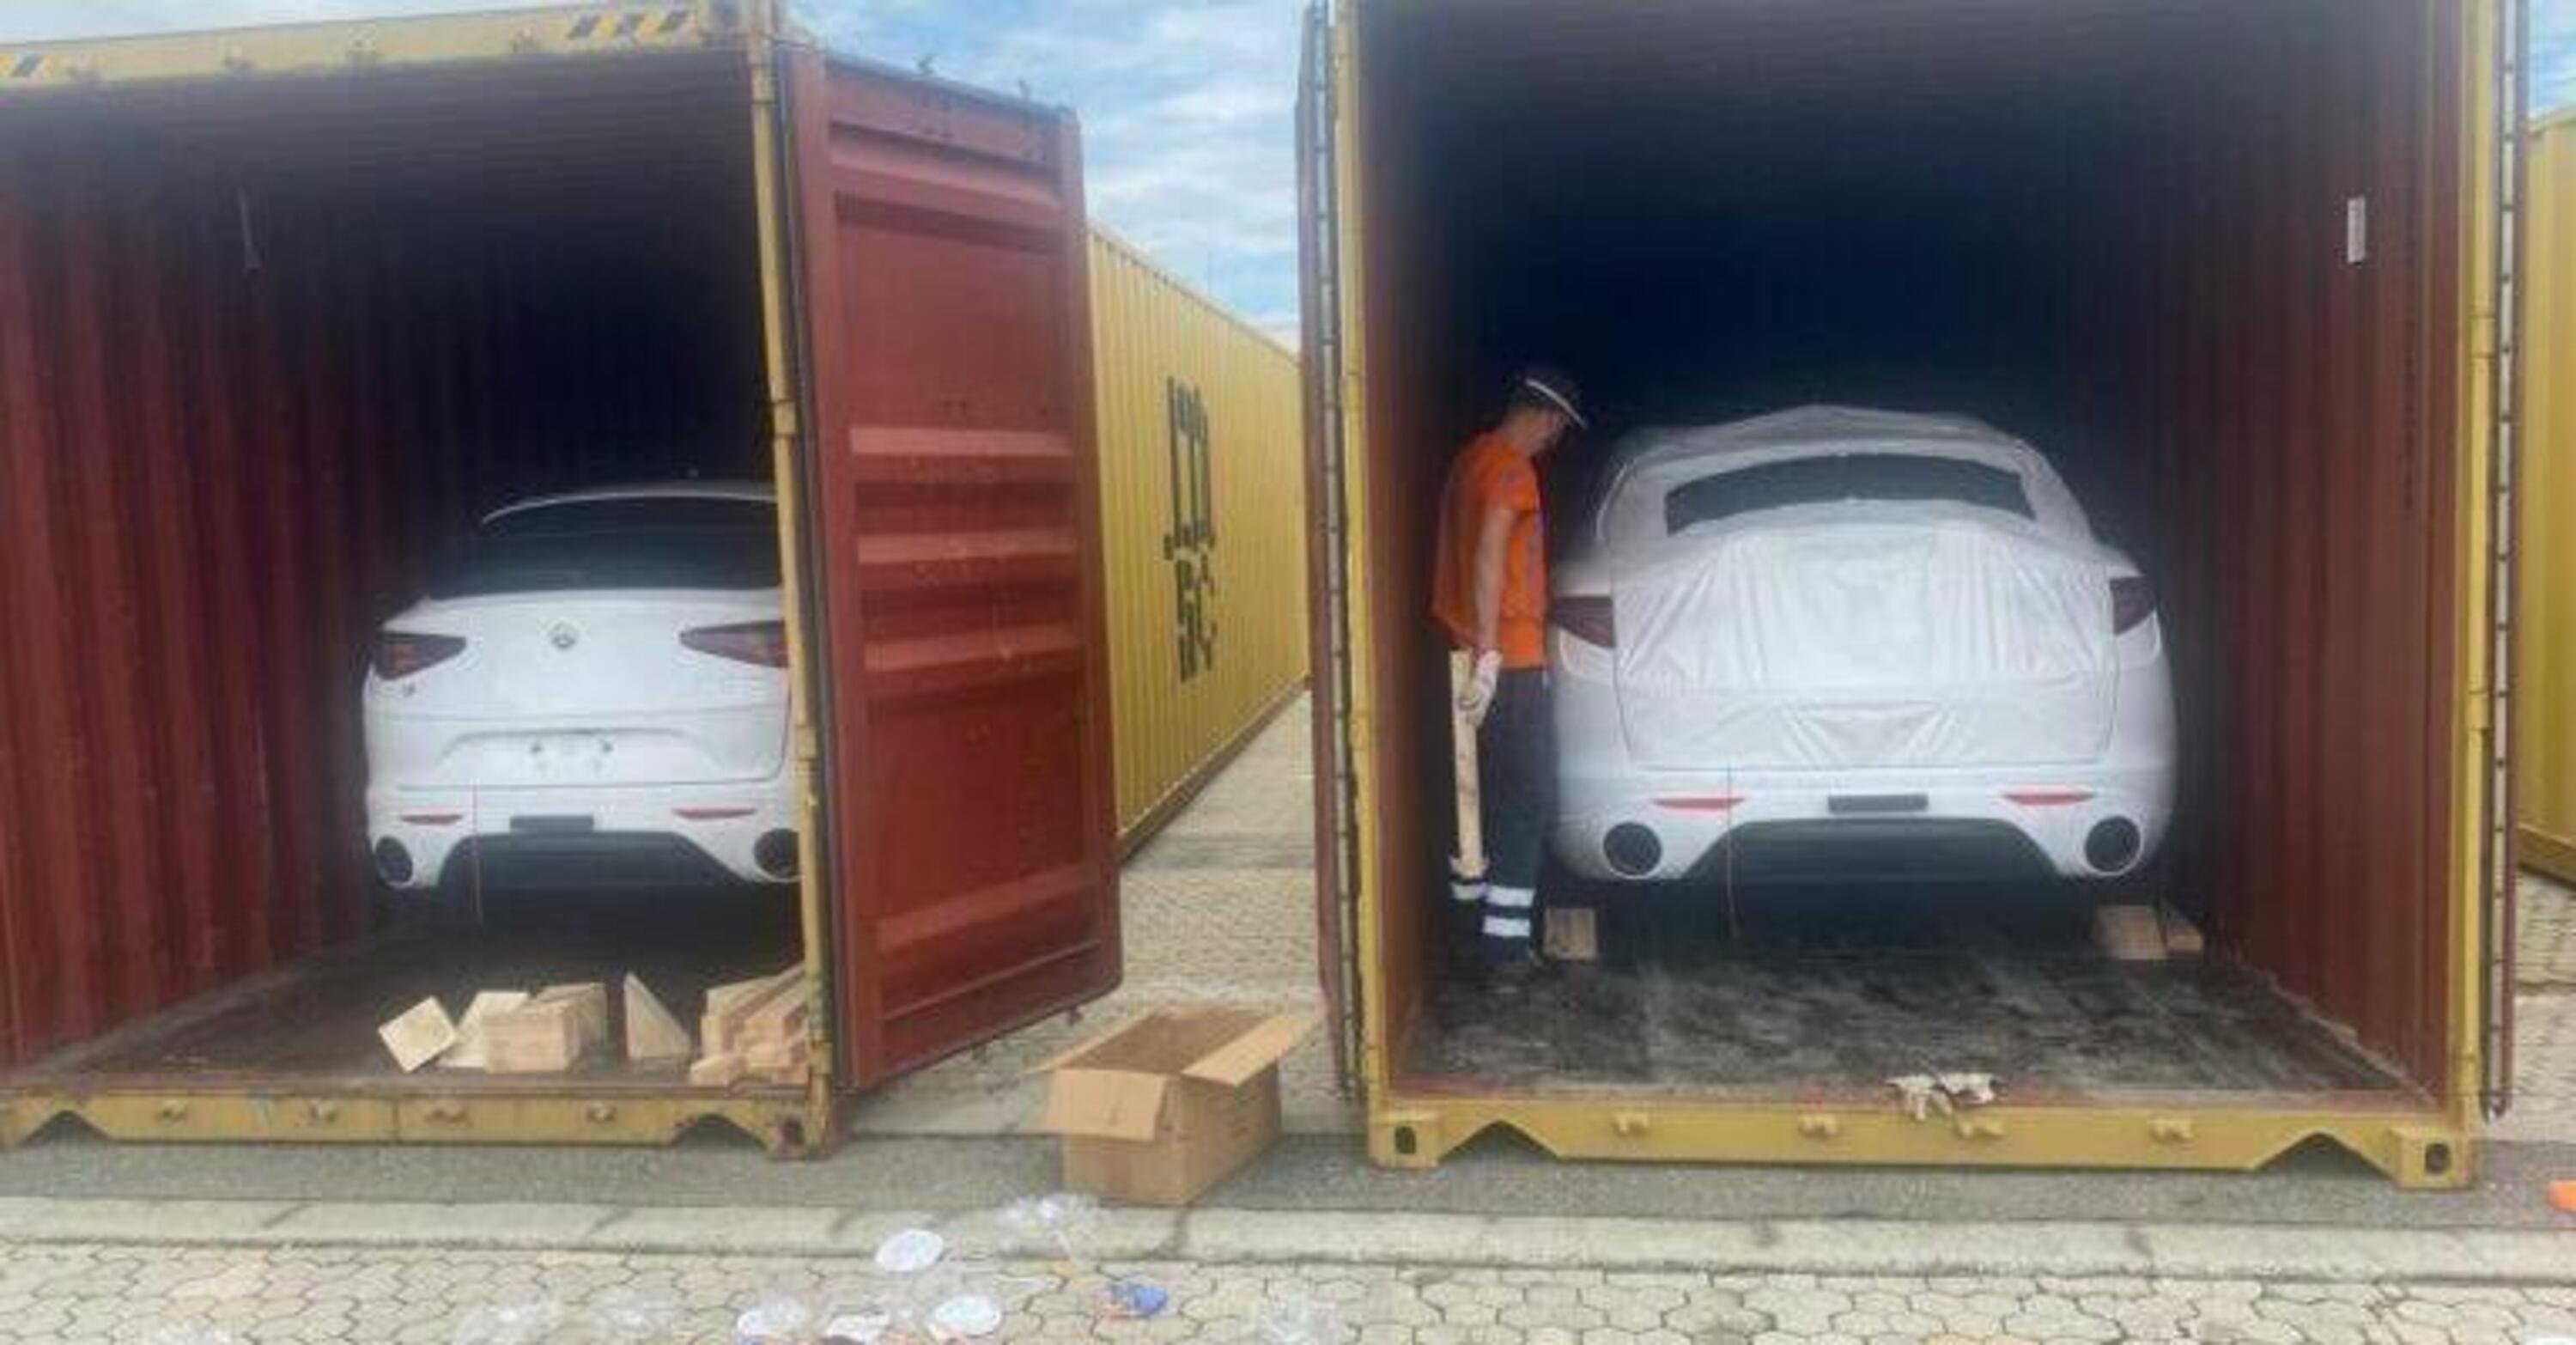 Alfa Romeo Giulia e Stelvio: direzione Messico, stivate nei container